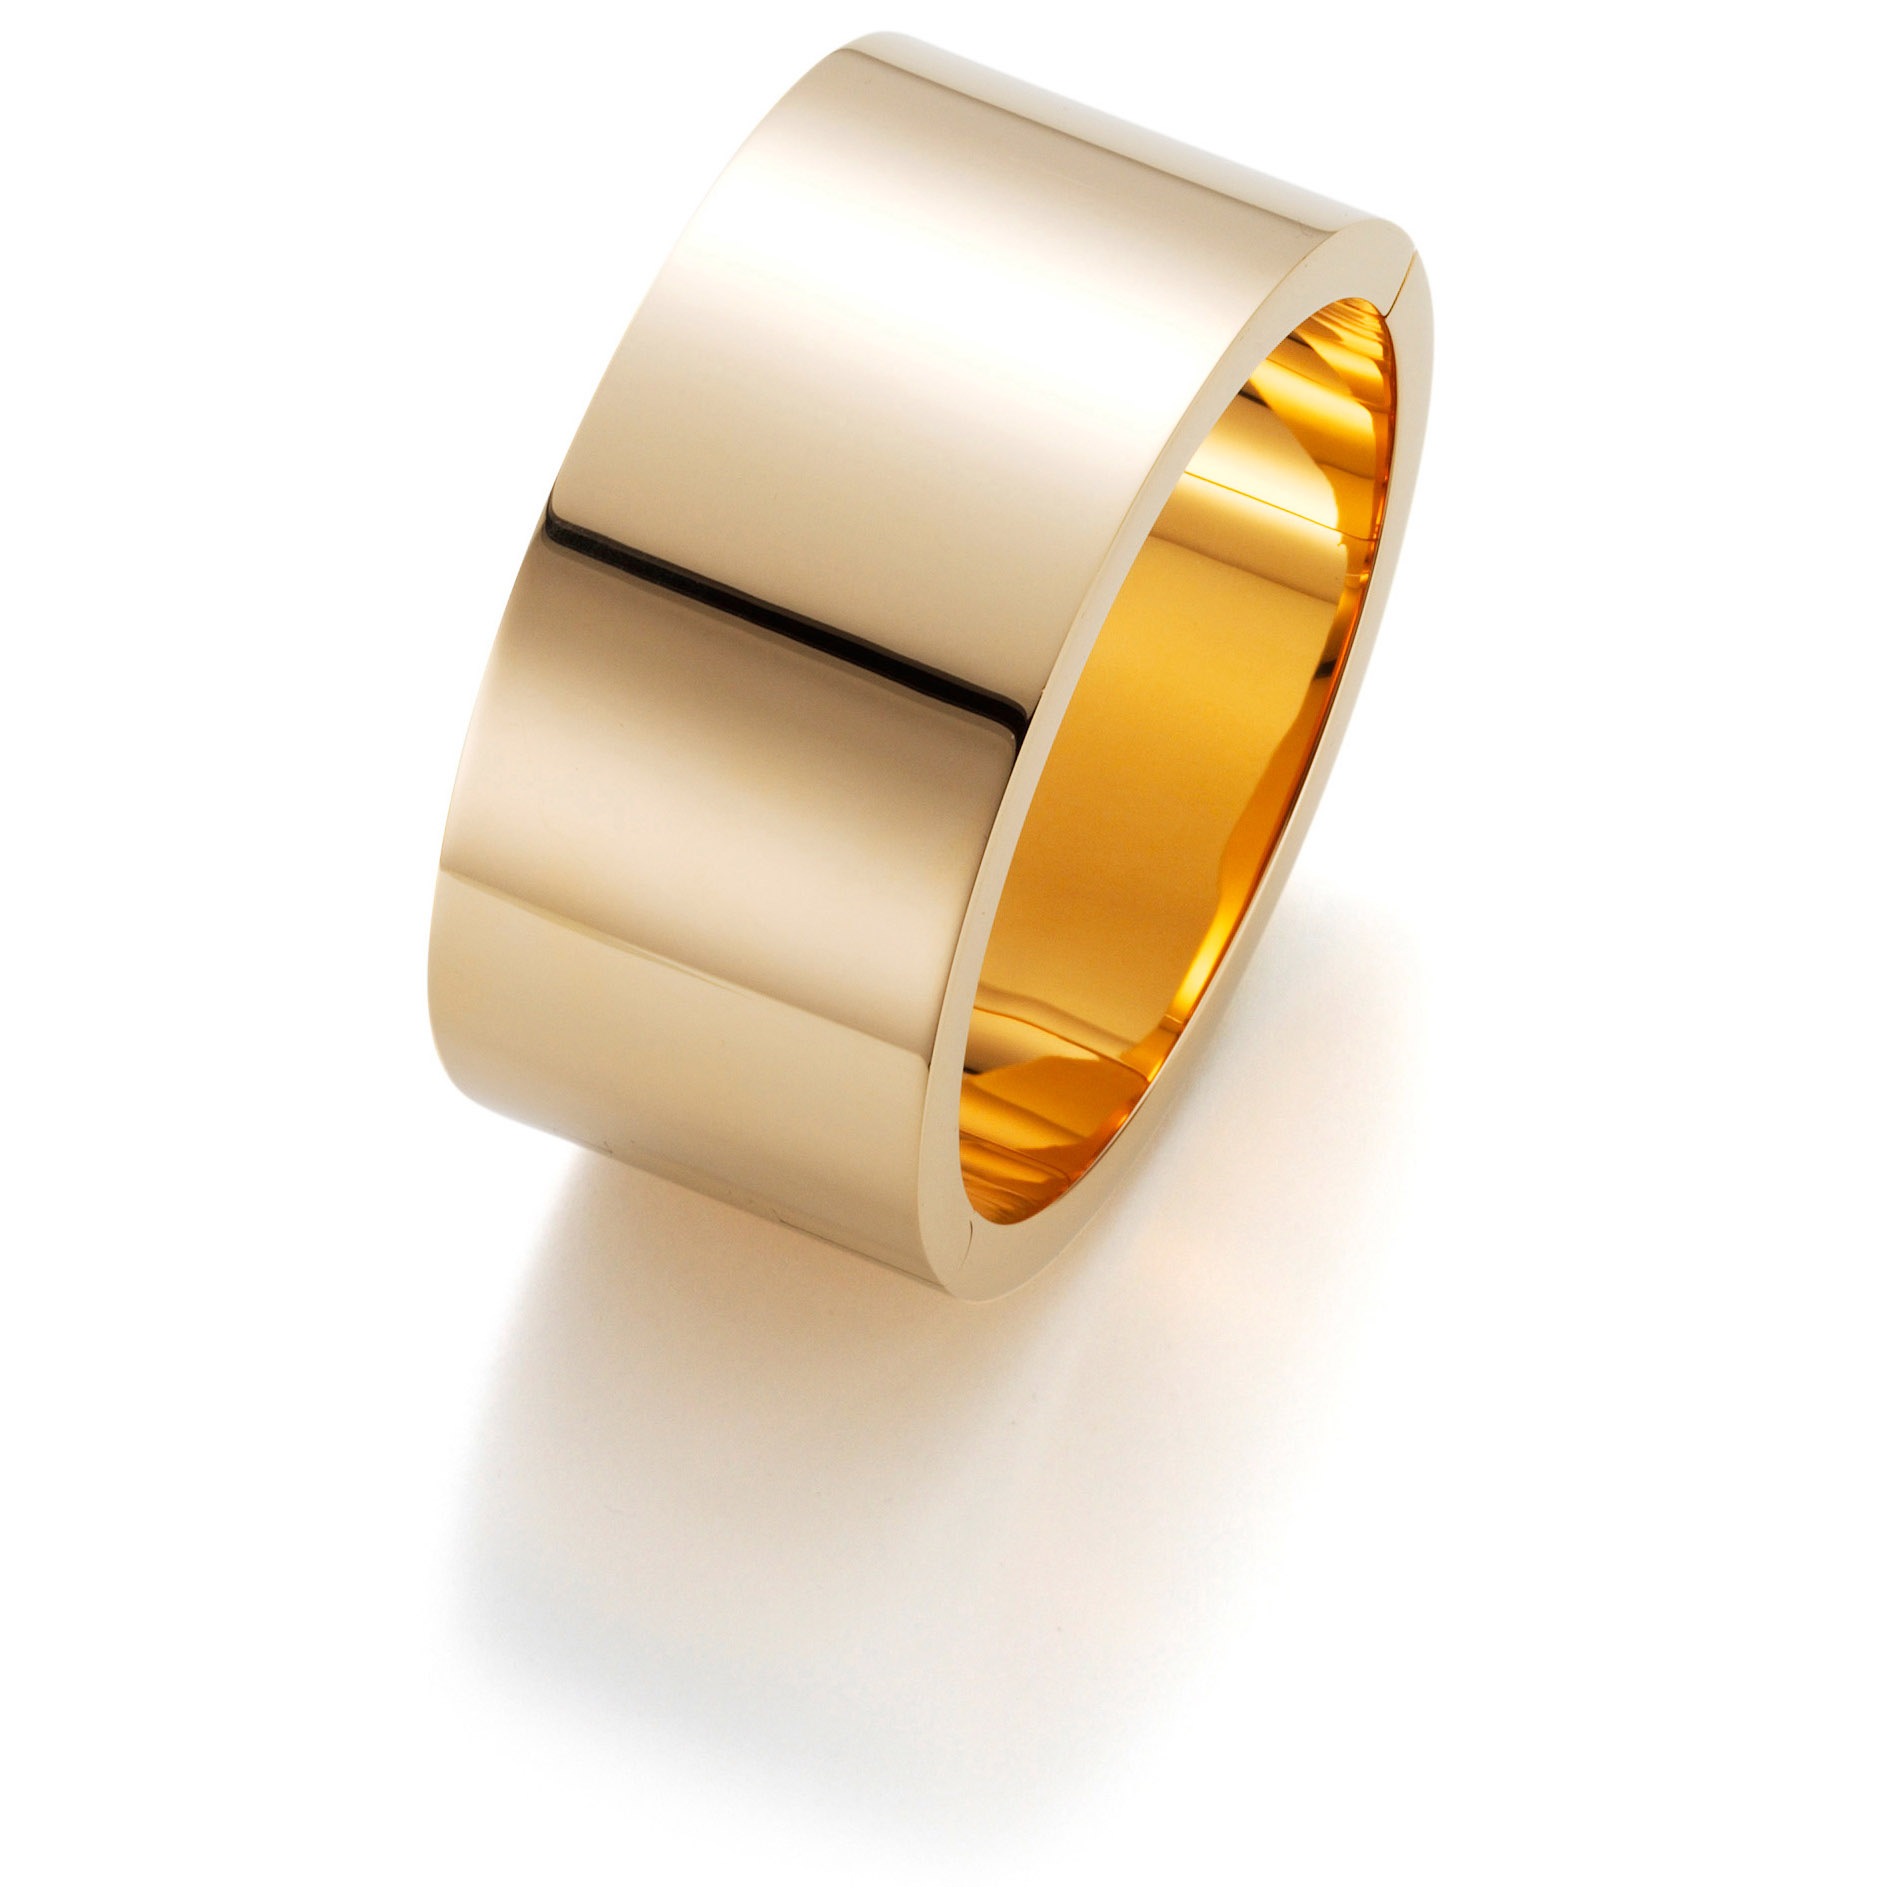 Hurtownia produkuje pierścionki na zamówienie 18-karatowym żółtym złotem dostawca biżuterii srebrnej OEM/ODM Biżuteria i hurtownia